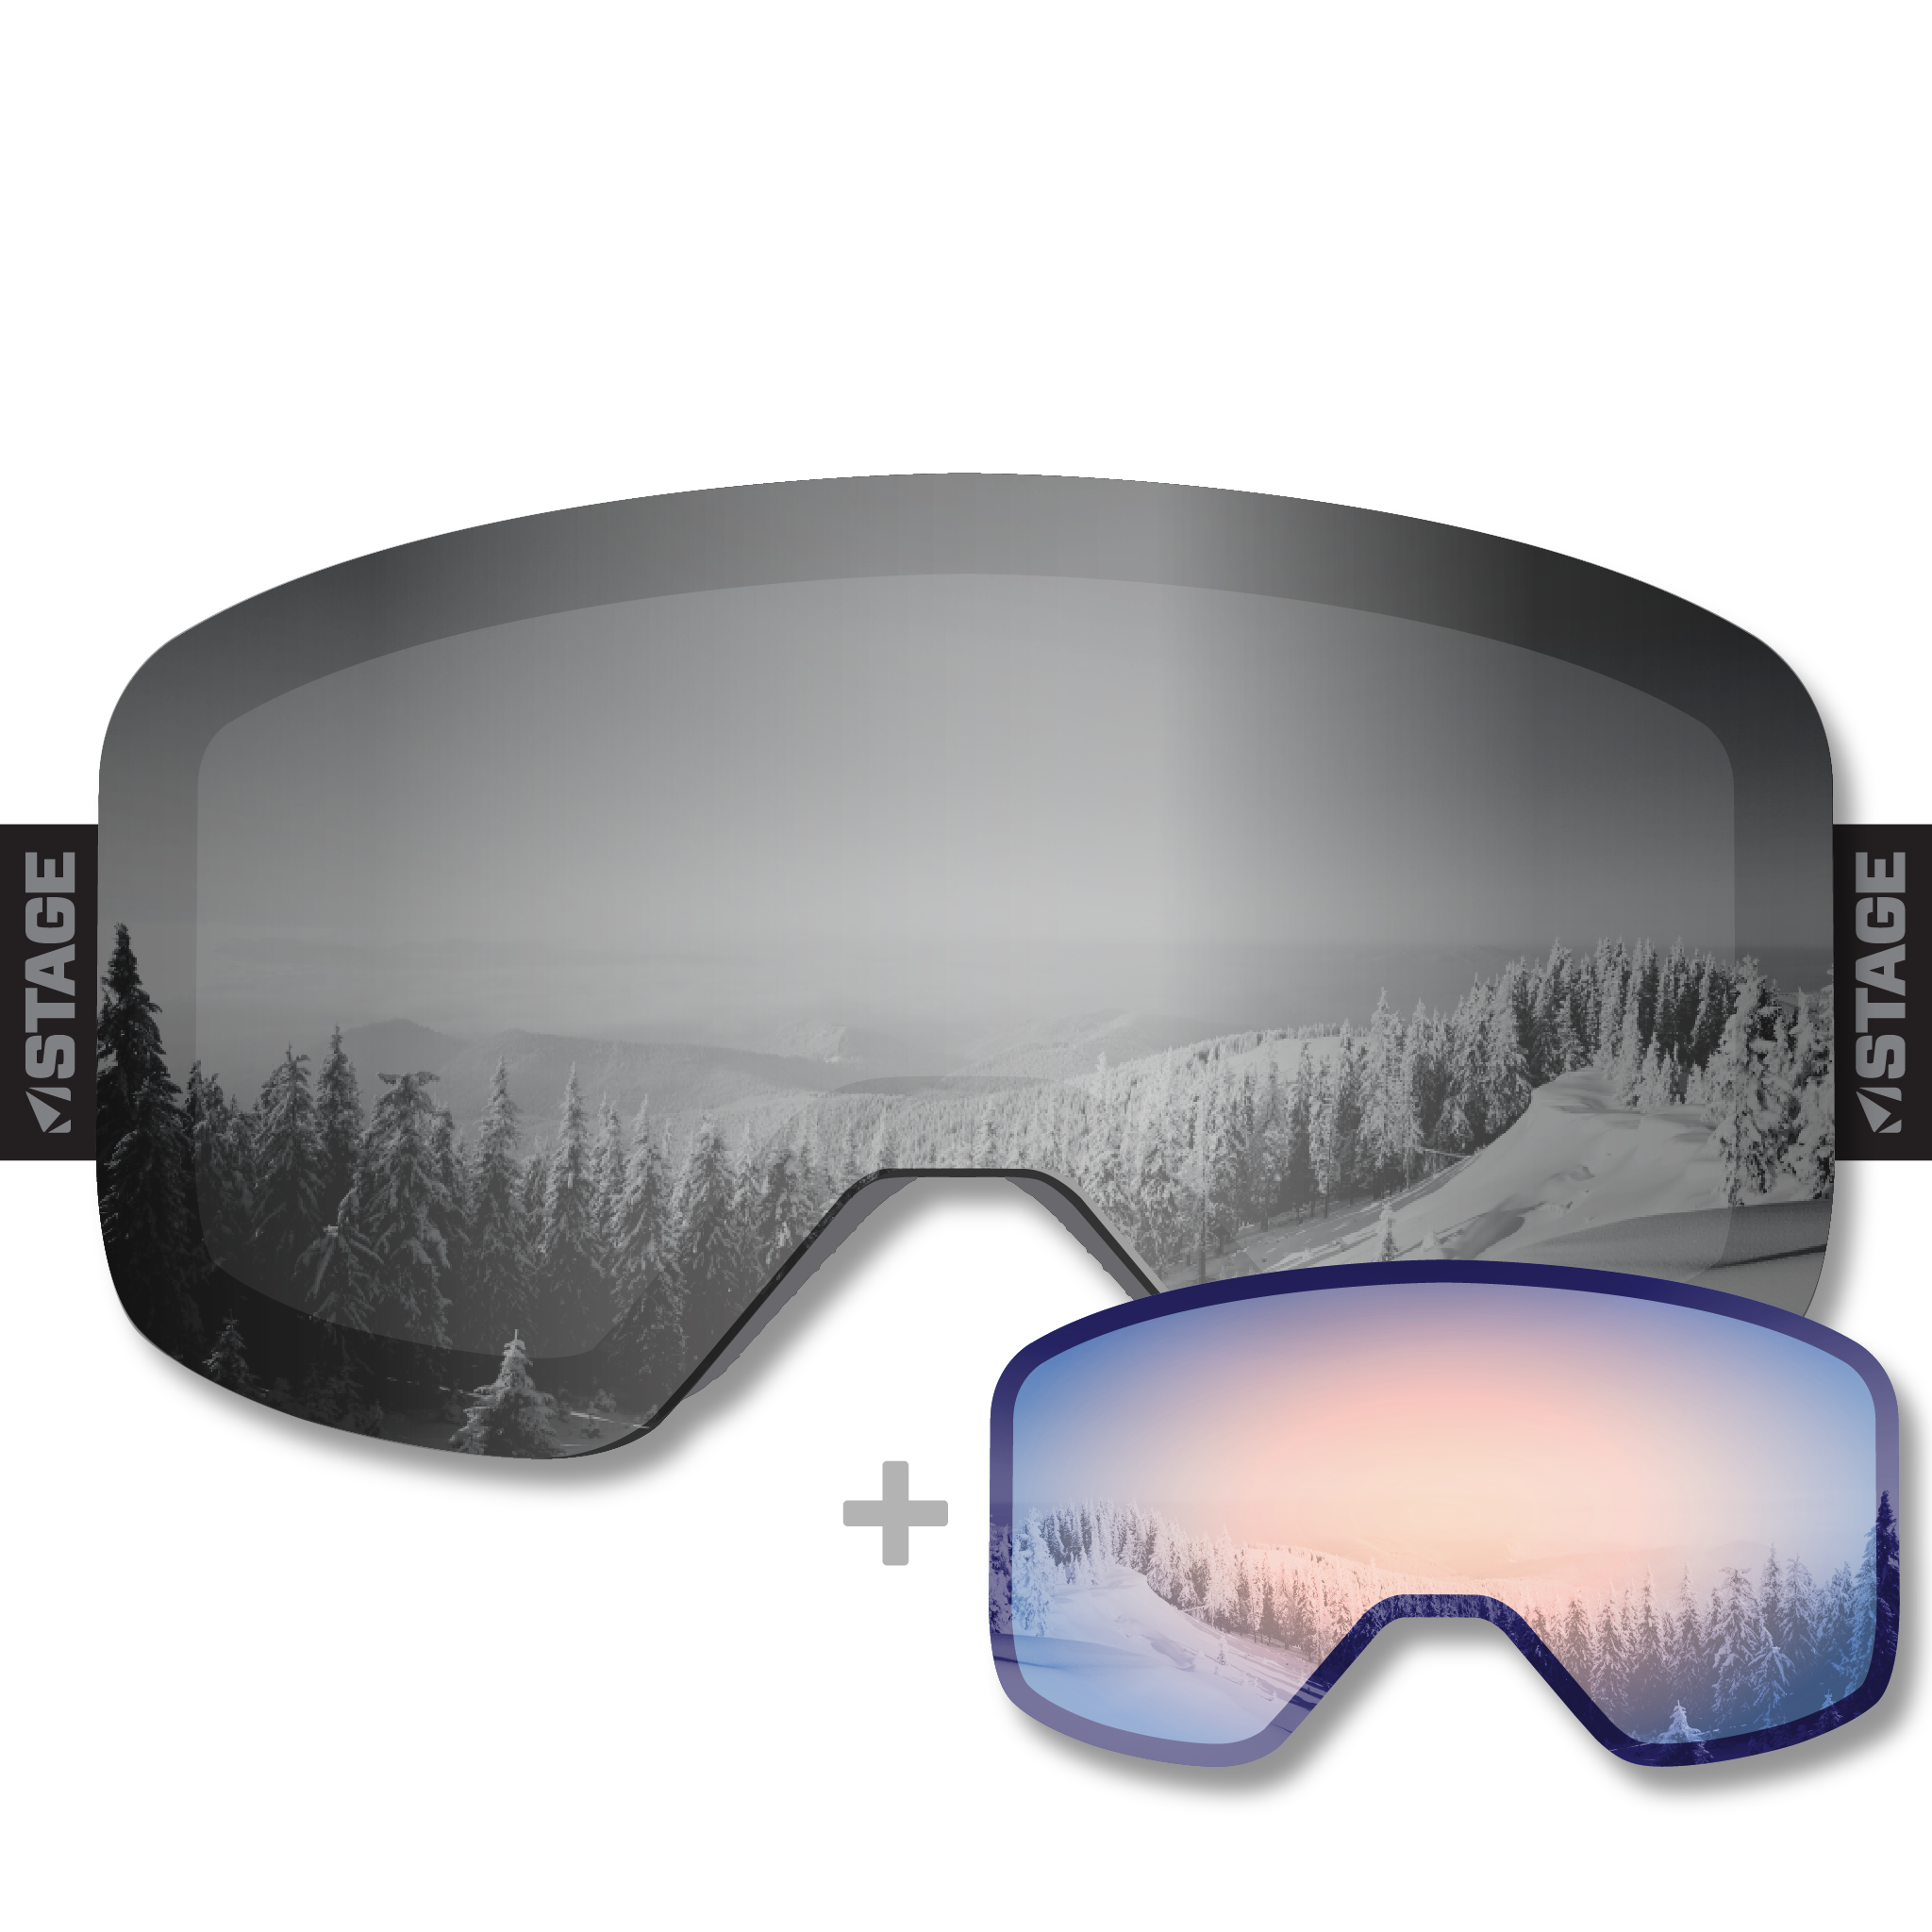 Arise & Ski Propnetic - Magnetic Ski Goggle + Bonus Lens